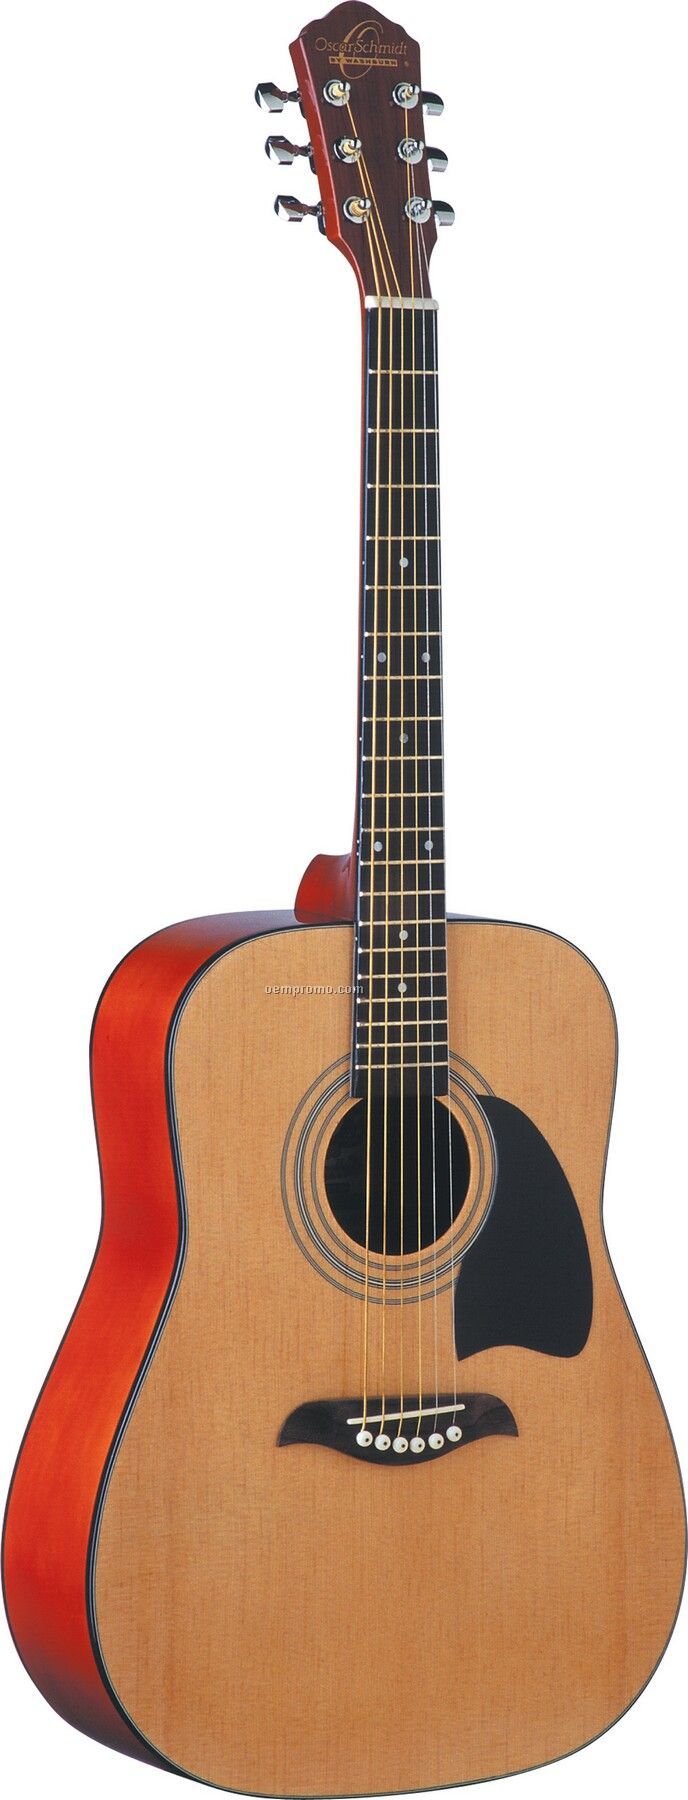 Oscar Schmidt 3/4 Size Steel String Acoustic Guitar